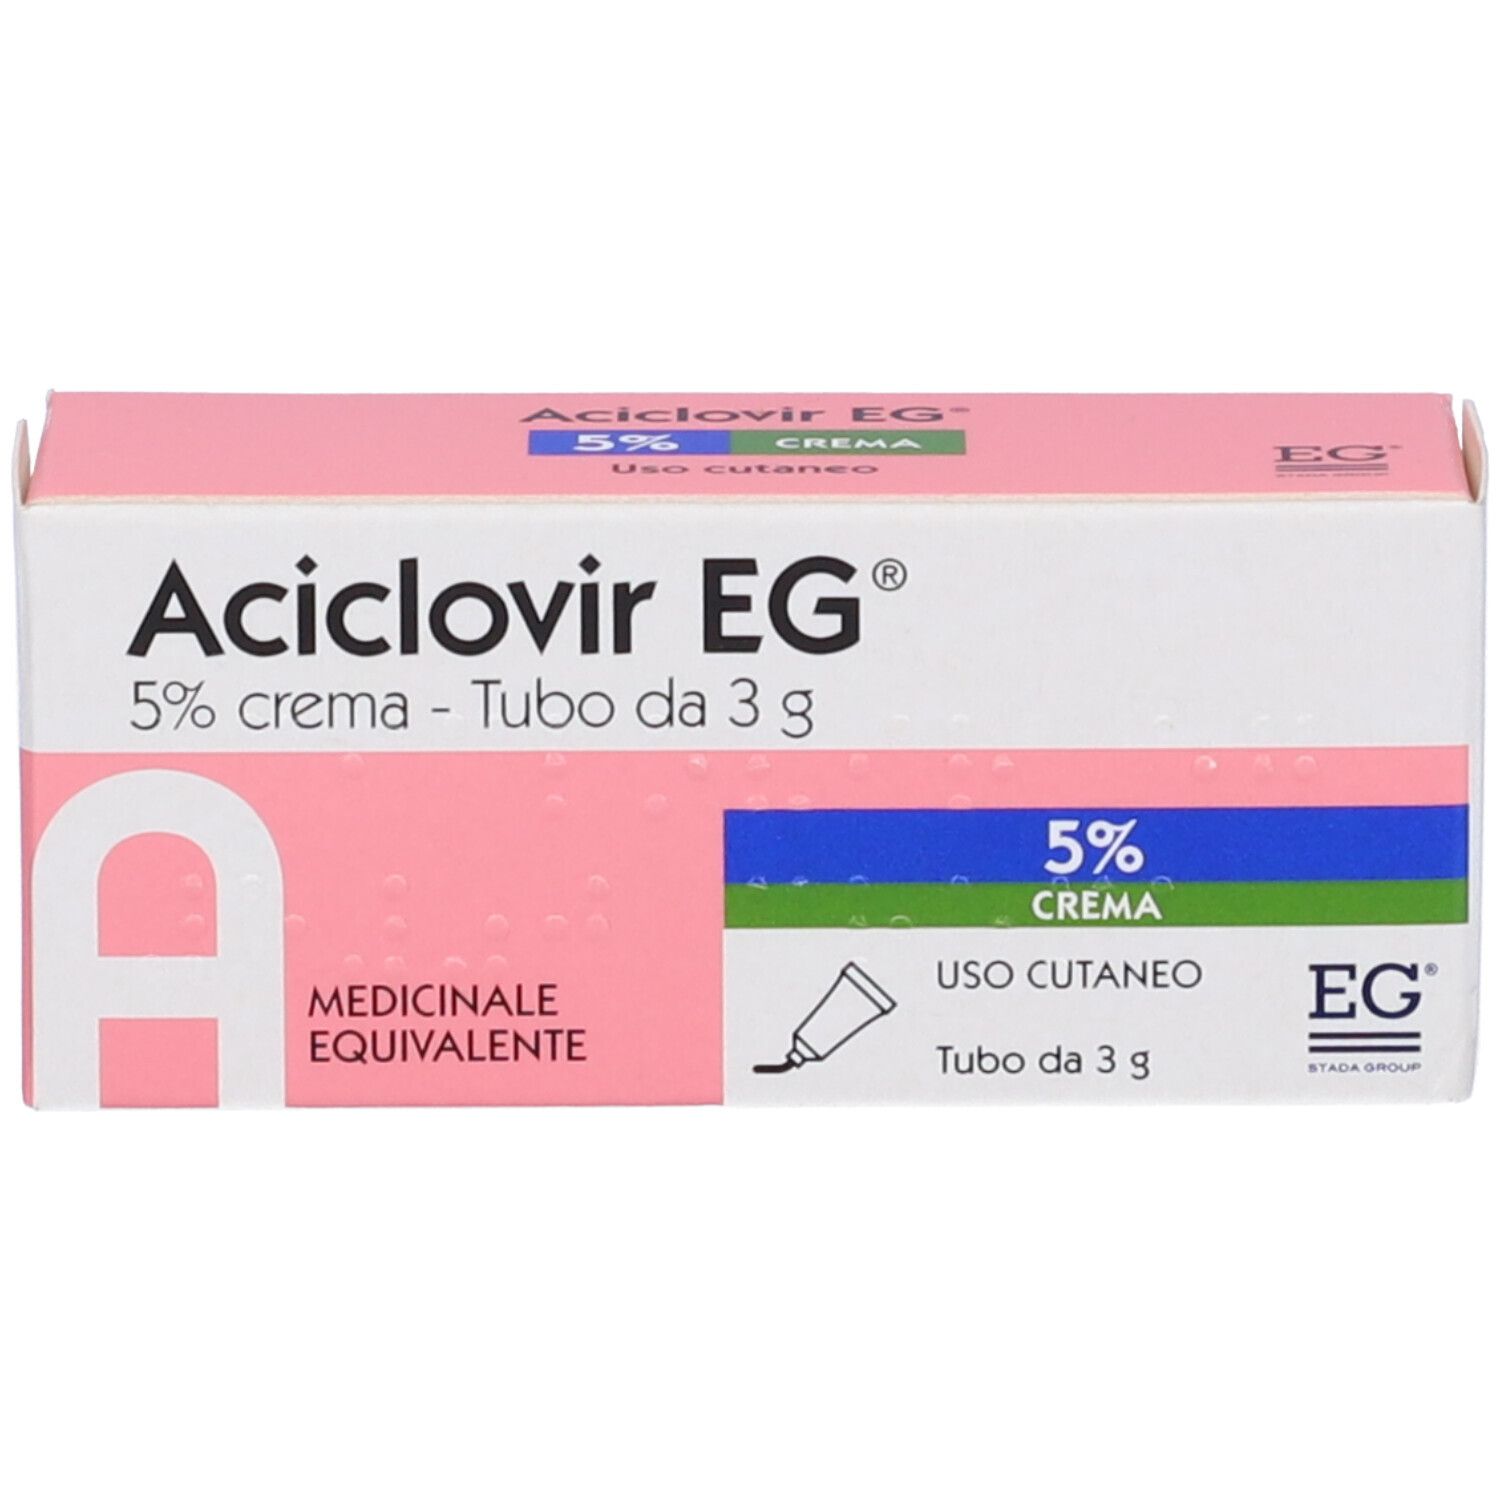 Aciclovir EG® 5% Crema